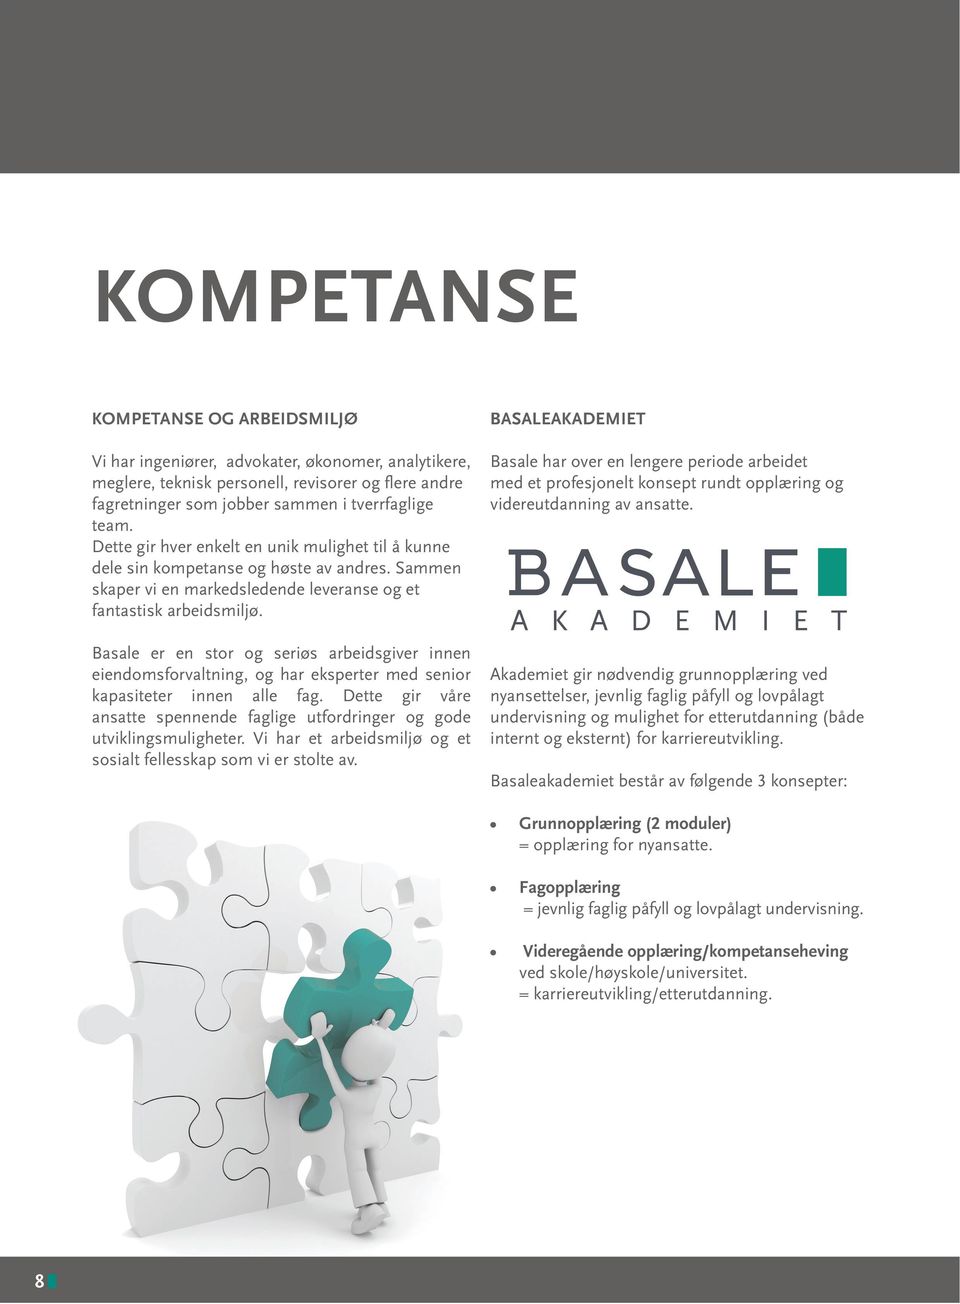 Basale er en stor og seriøs arbeidsgiver innen eiendomsforvaltning, og har eksperter med senior kapasiteter innen alle fag.